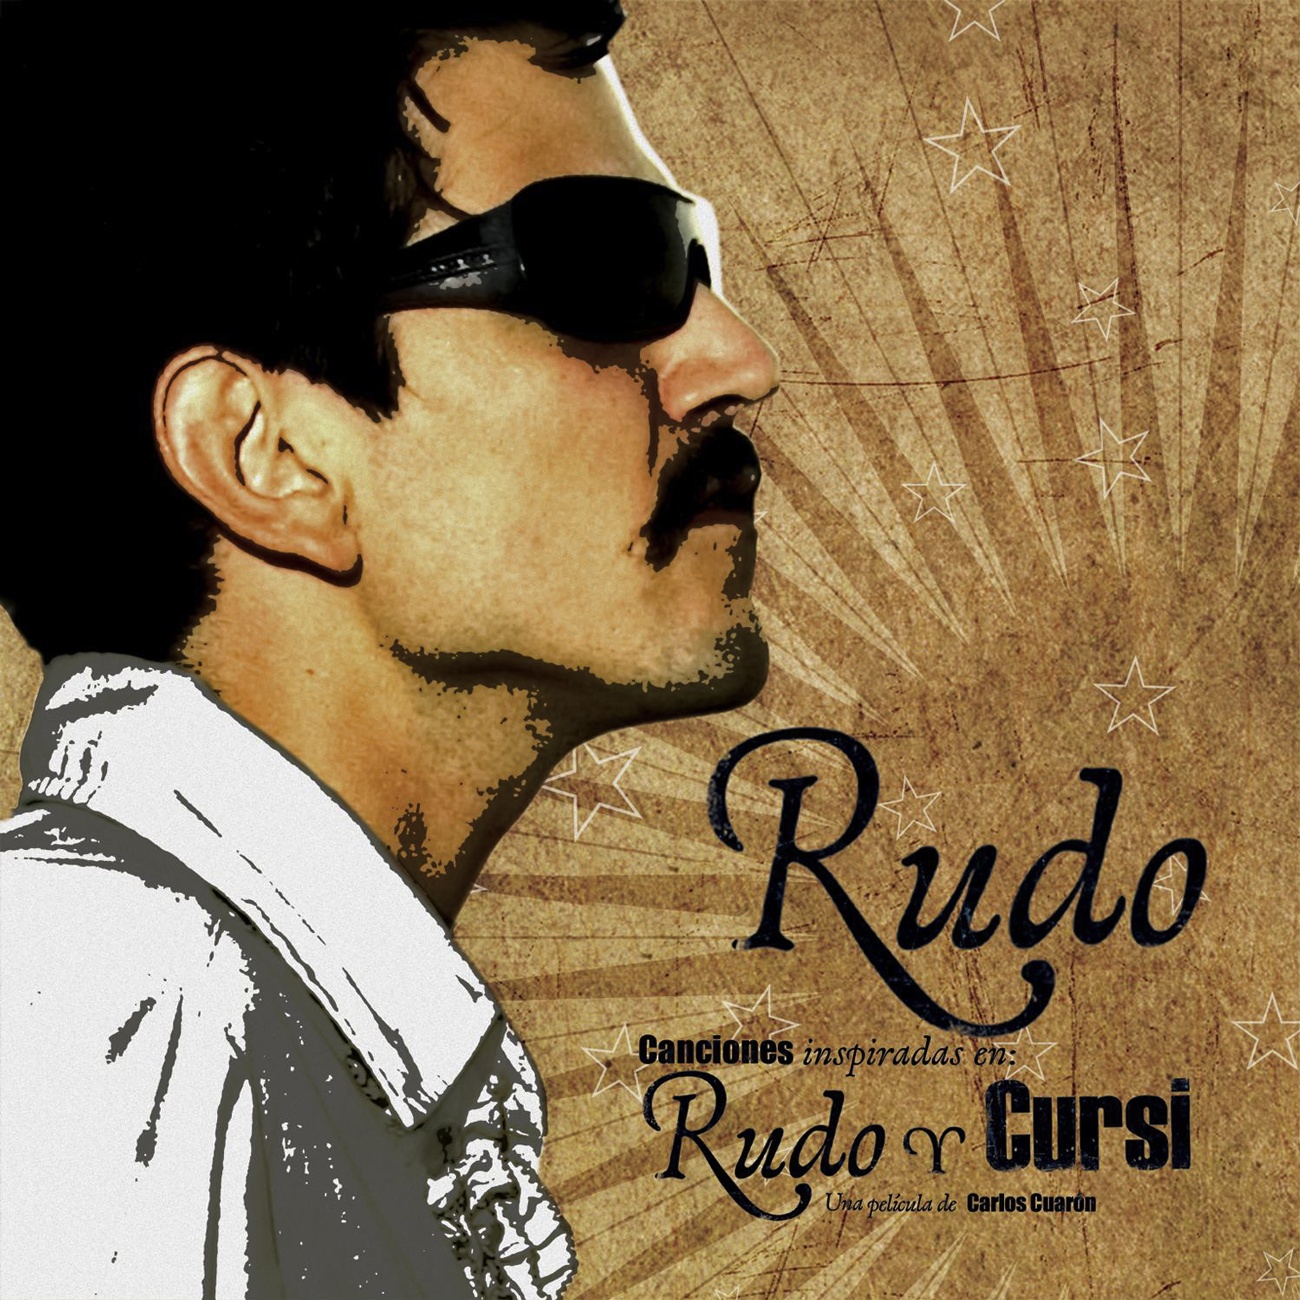 Rudo Y Cursi (Disco Rudo)